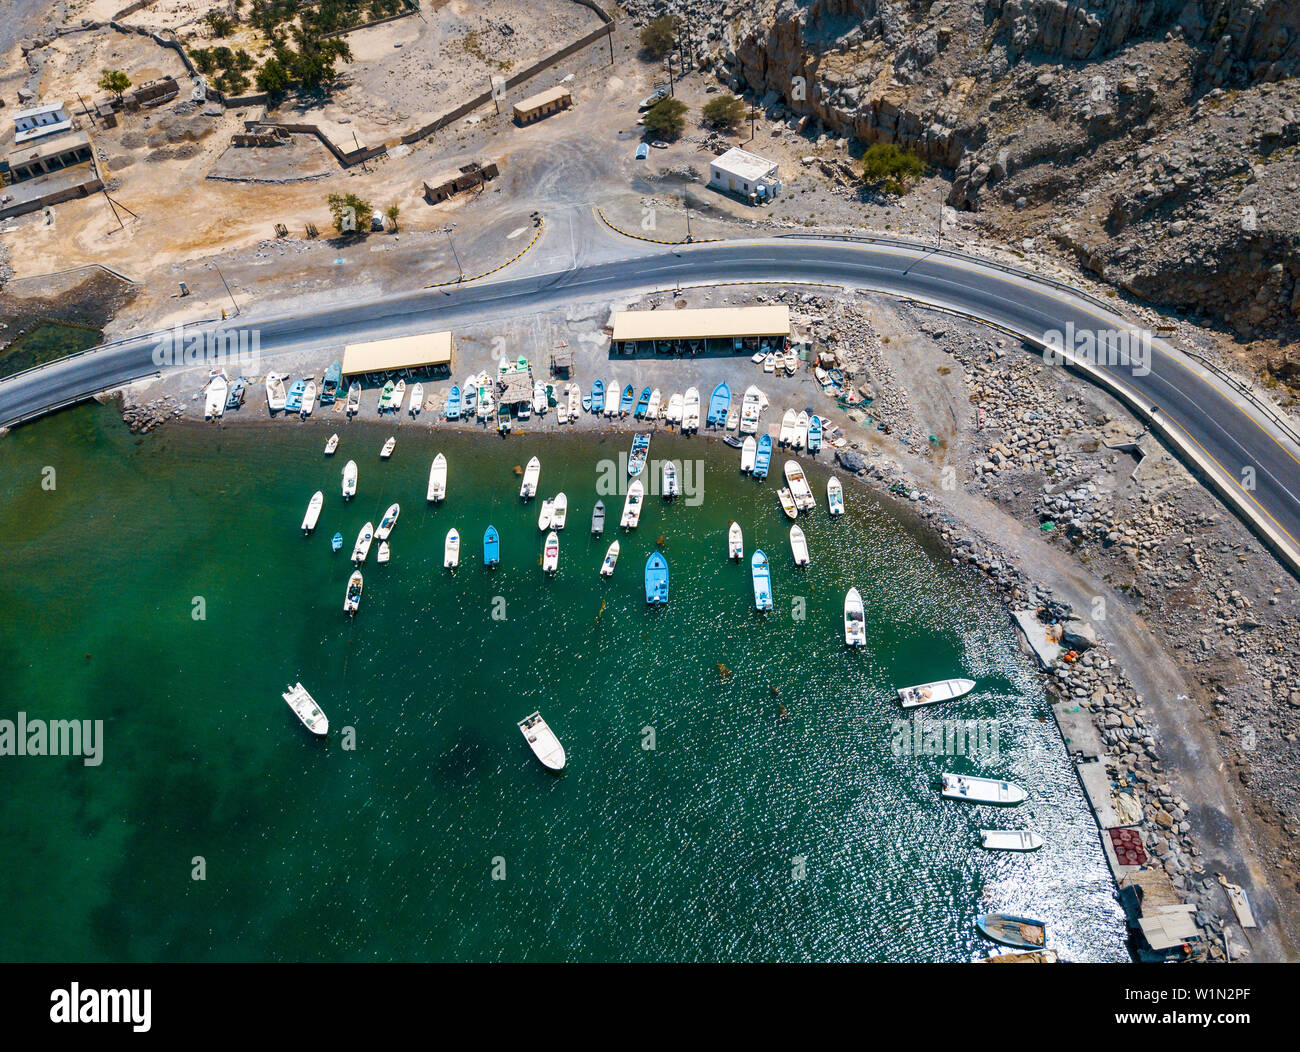 La route côtière panoramique et les fjords de Musandam Oman en vue aérienne Banque D'Images